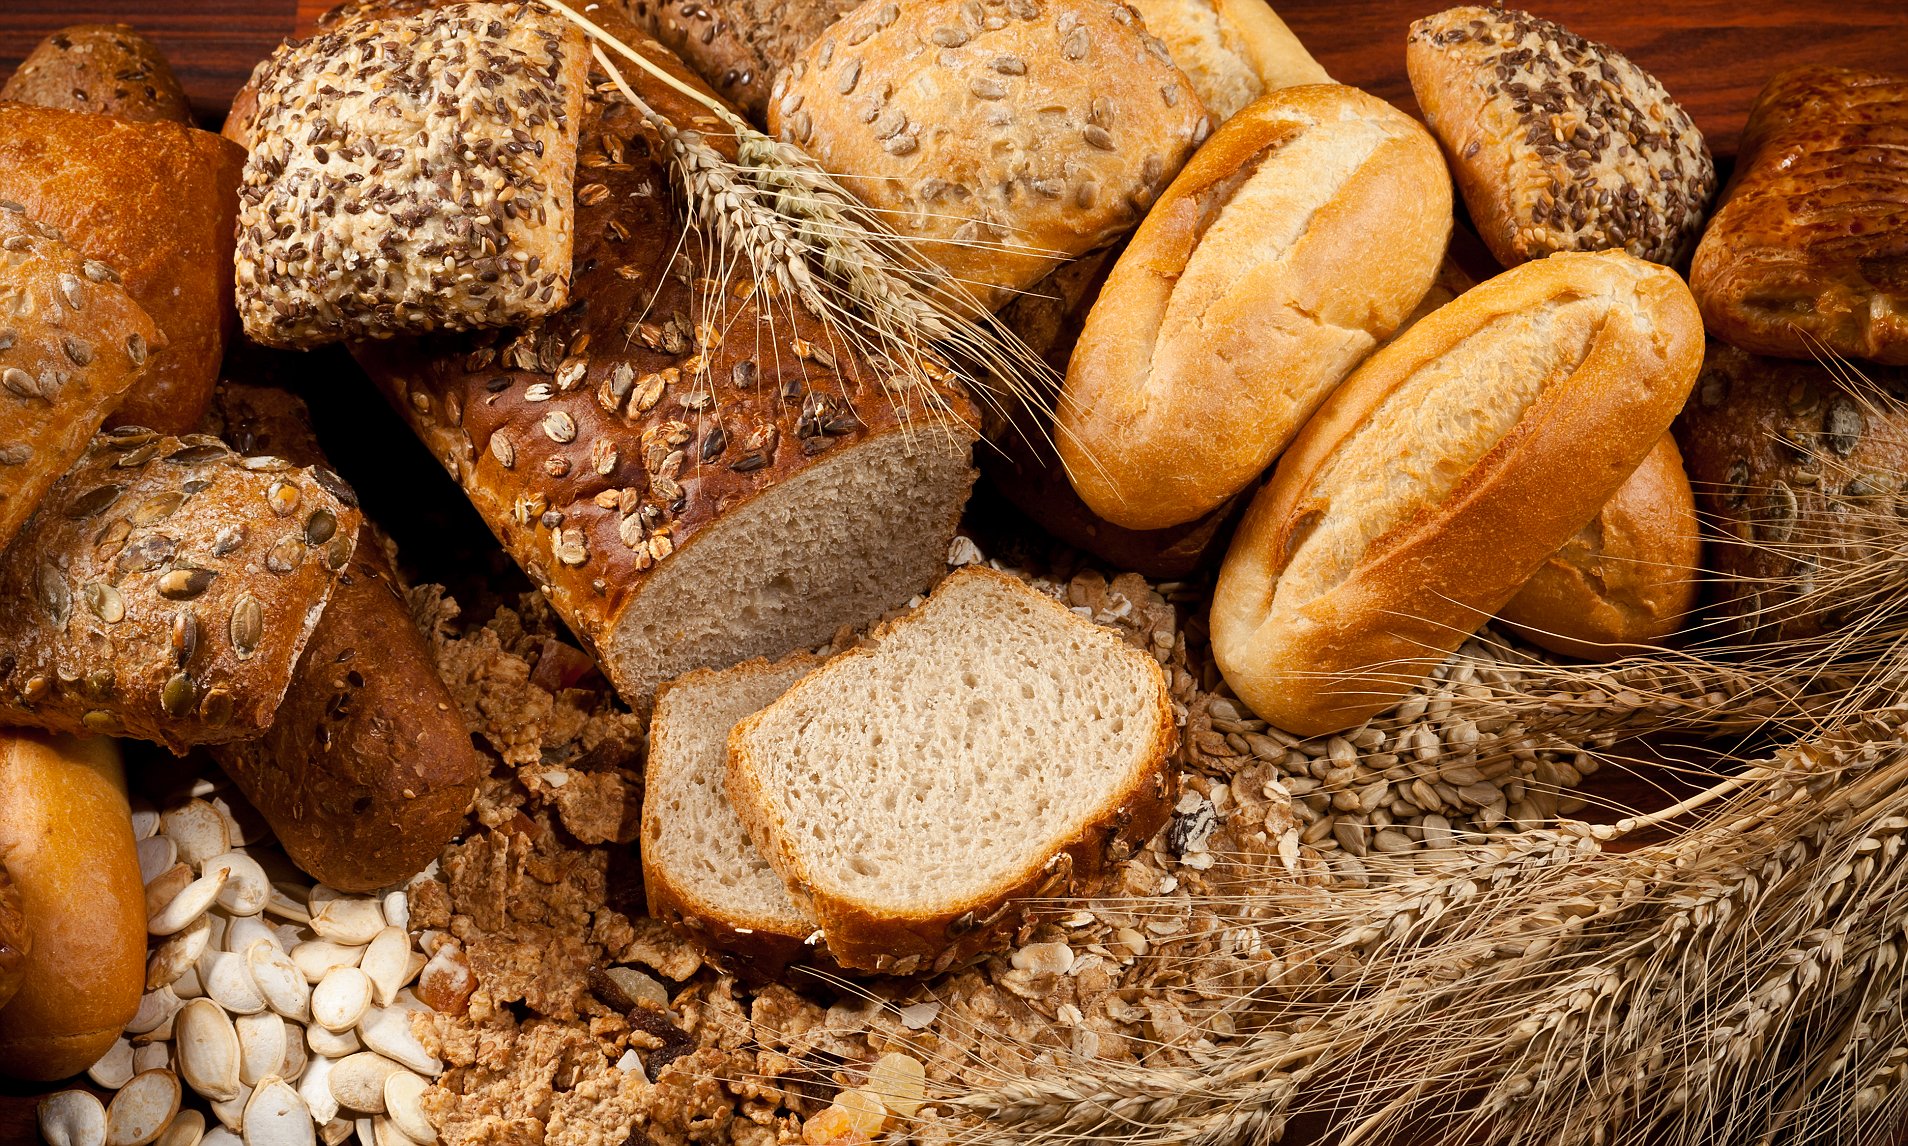 О хлебе и хлебобулочных изделиях